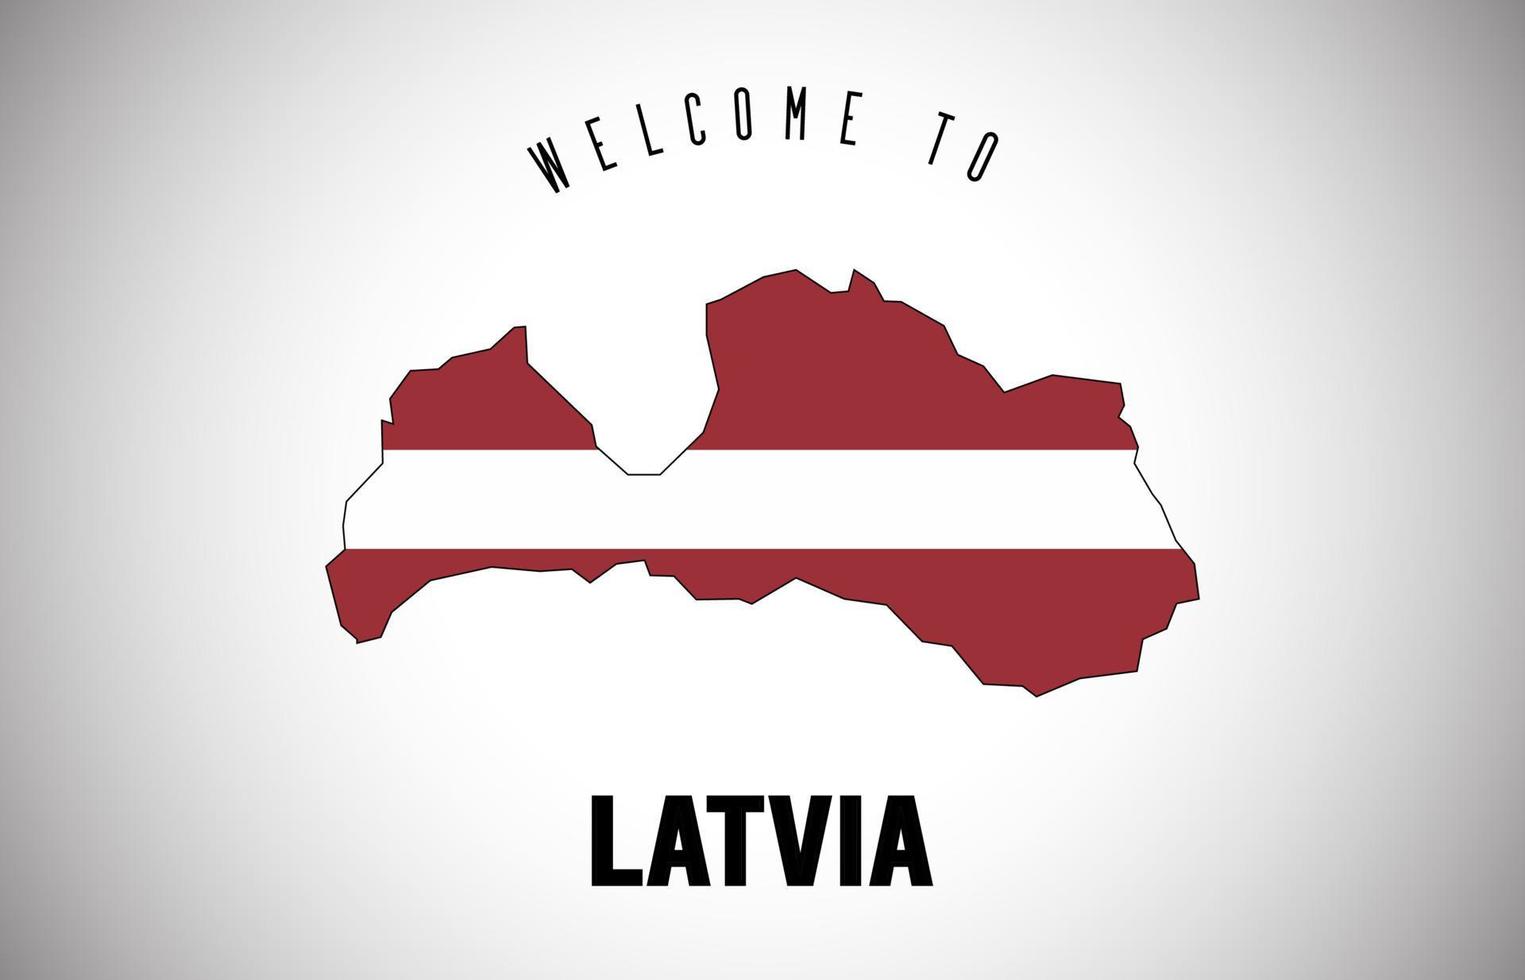 Lettland välkommen till text och landsflagga inuti landsgränskarta vektordesign. vektor